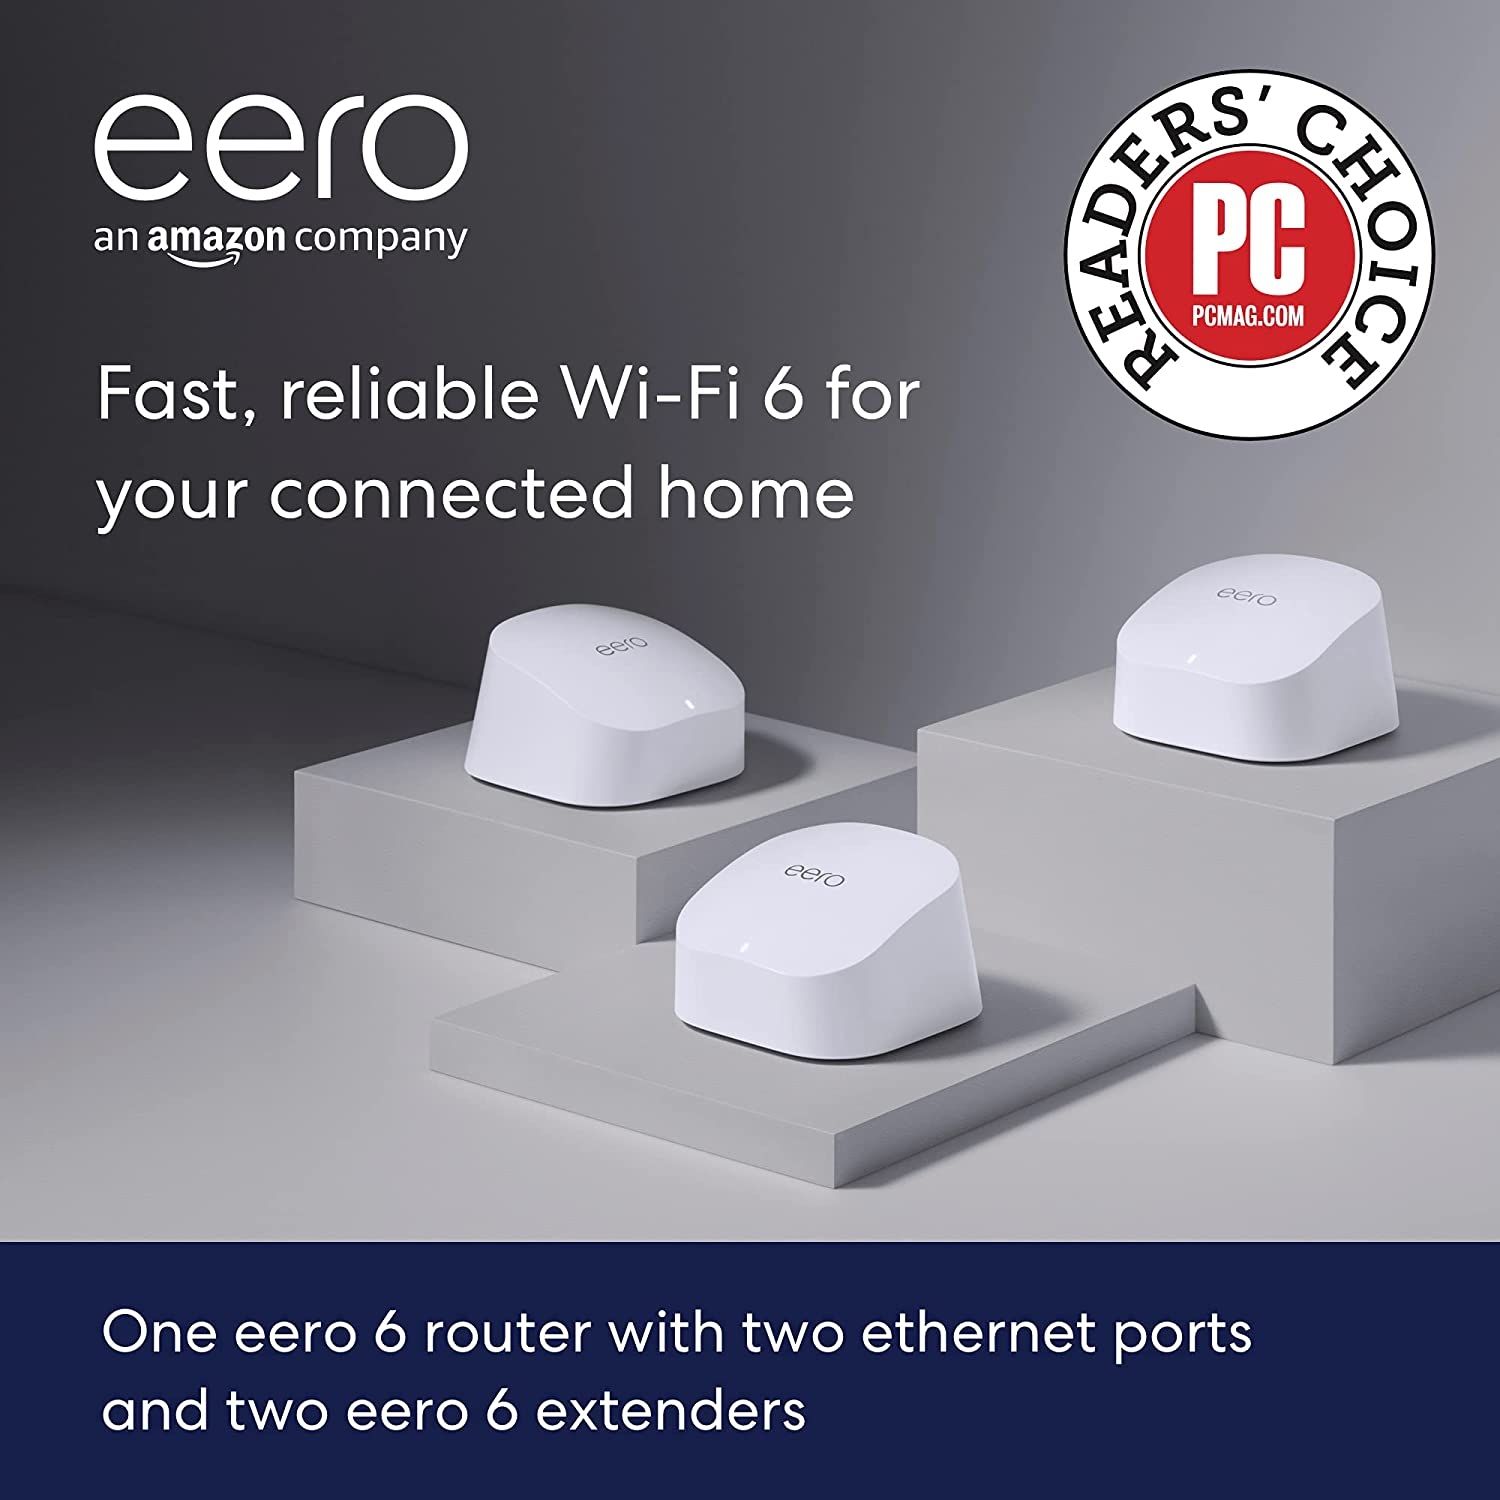 Amazon.com: Amazon eero 6 dual-band mesh Wi-Fi 6 system with built-in Zigbee smart home hub (3-pack, one eero 6 router + two eero 6 extenders) : Electronics $195